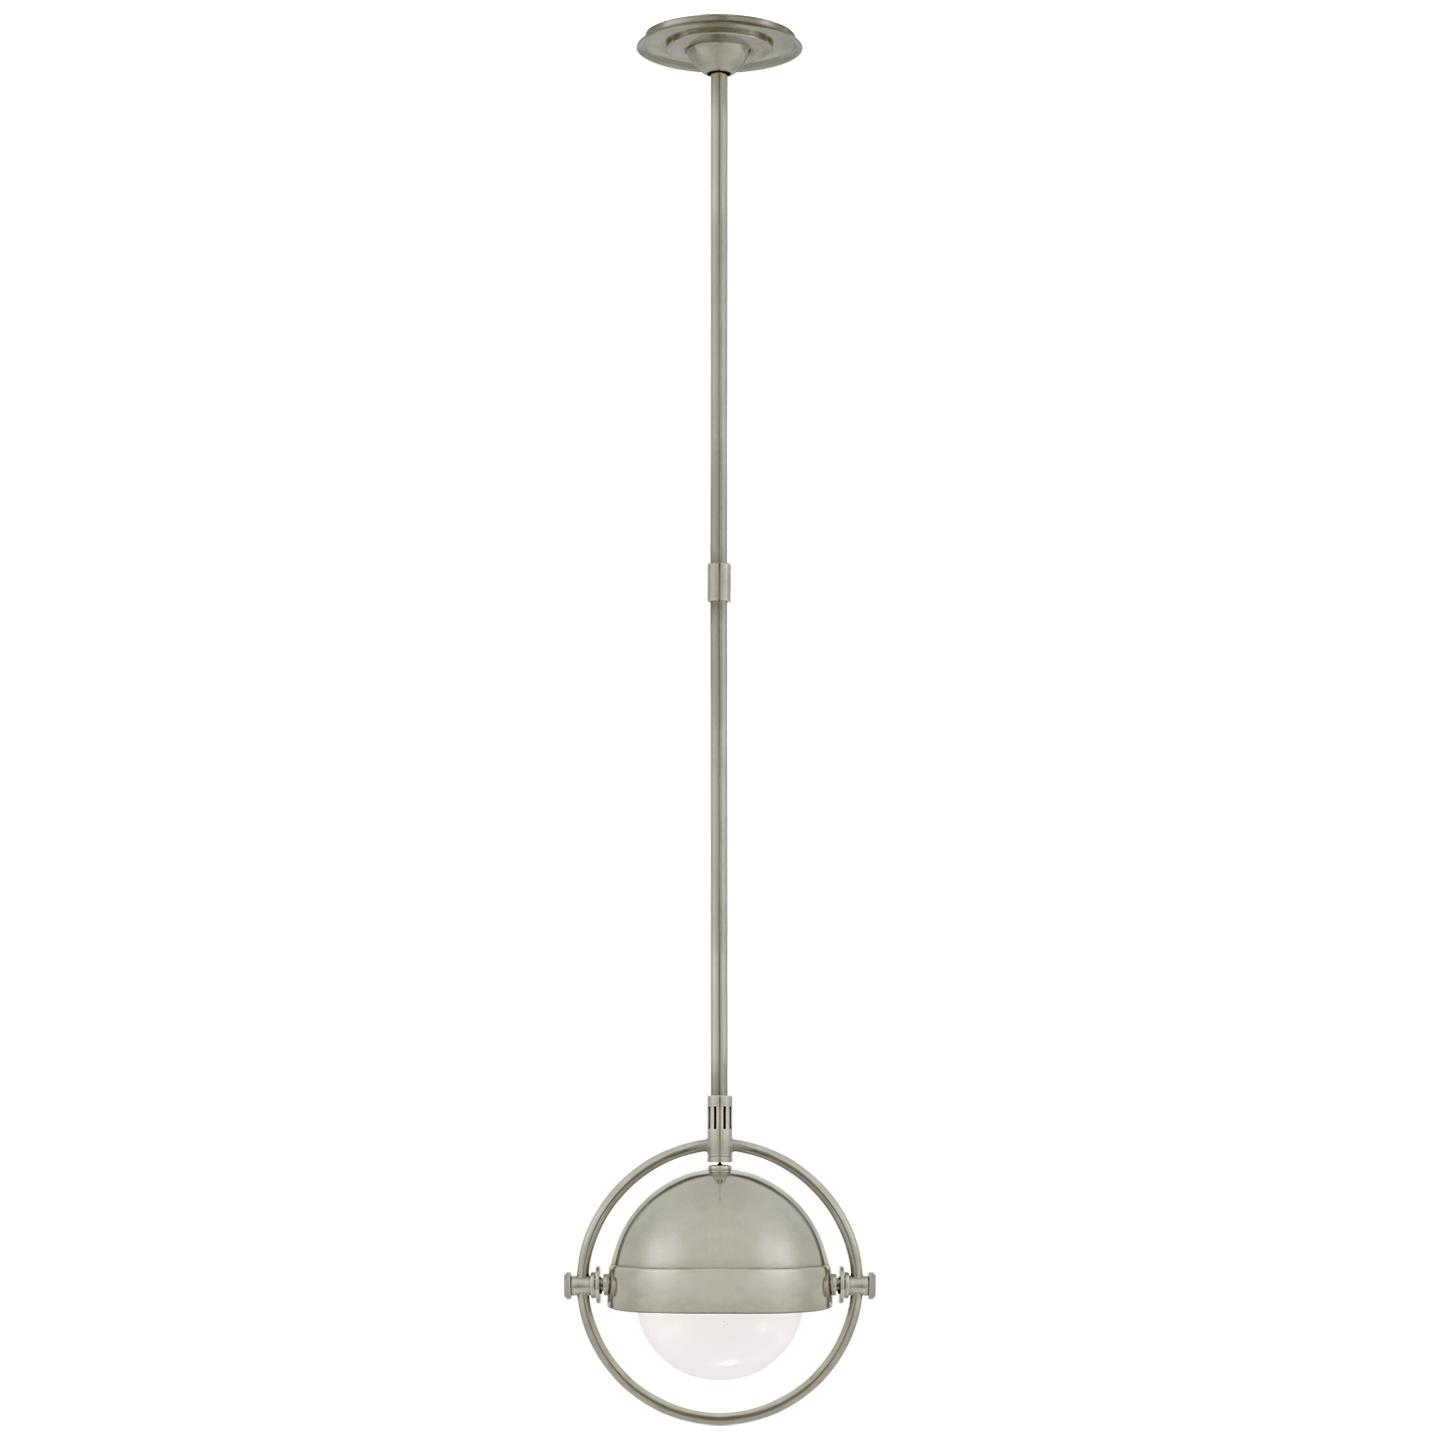 Купить Подвесной светильник Decca Small Orbital Pendant в интернет-магазине roooms.ru